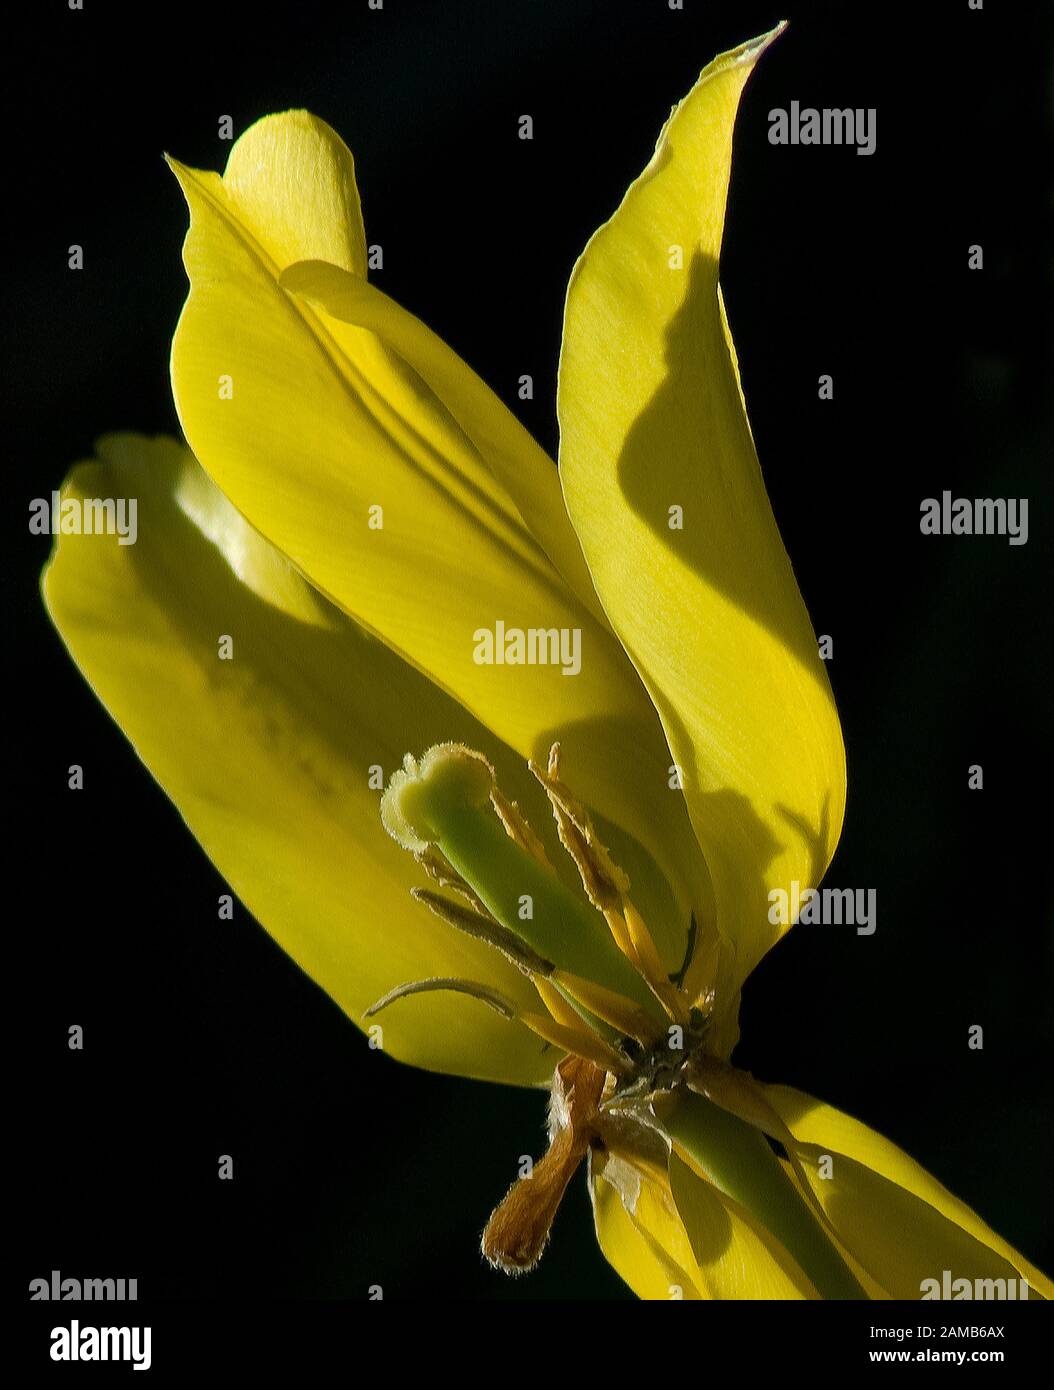 Nahaufnahme von gelber, gestelzter Tulpe mit einem nach unten gekehrten Blütenblatt, der Staubfäden und Samenkopf vor schwarzem Hintergrund zeigt Stockfoto